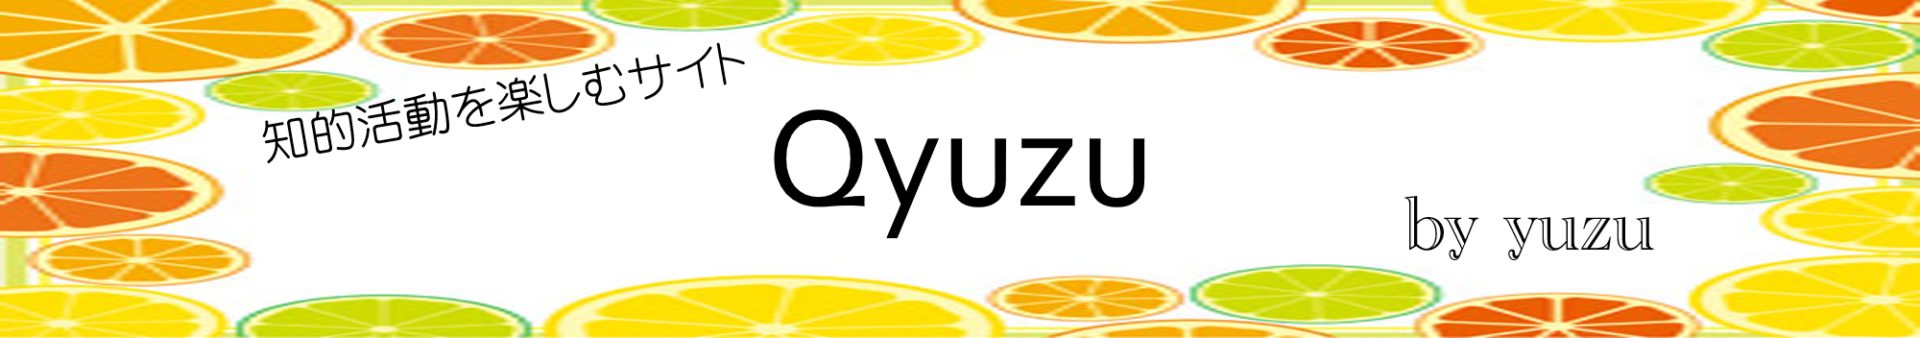 ひらめき力クイズの定番 あるなしクイズの問題集 Qyuzu